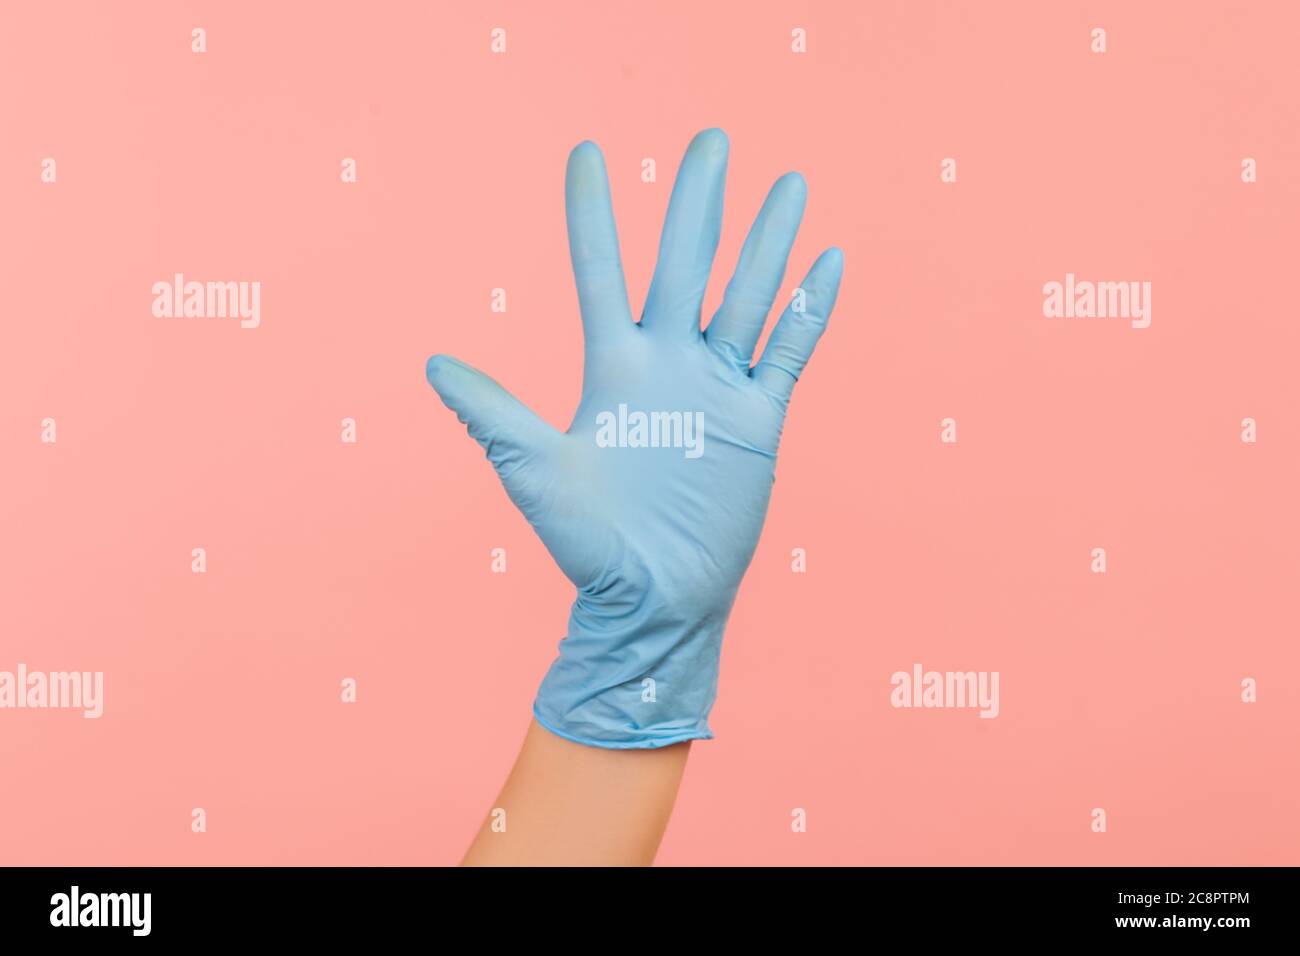 Profilo Vista laterale primo piano della mano umana in guanti chirurgici blu che mostrano il numero cinque con la mano o con la mano che ondeggiano per salutare. Interno, studio shot, isolare Foto Stock